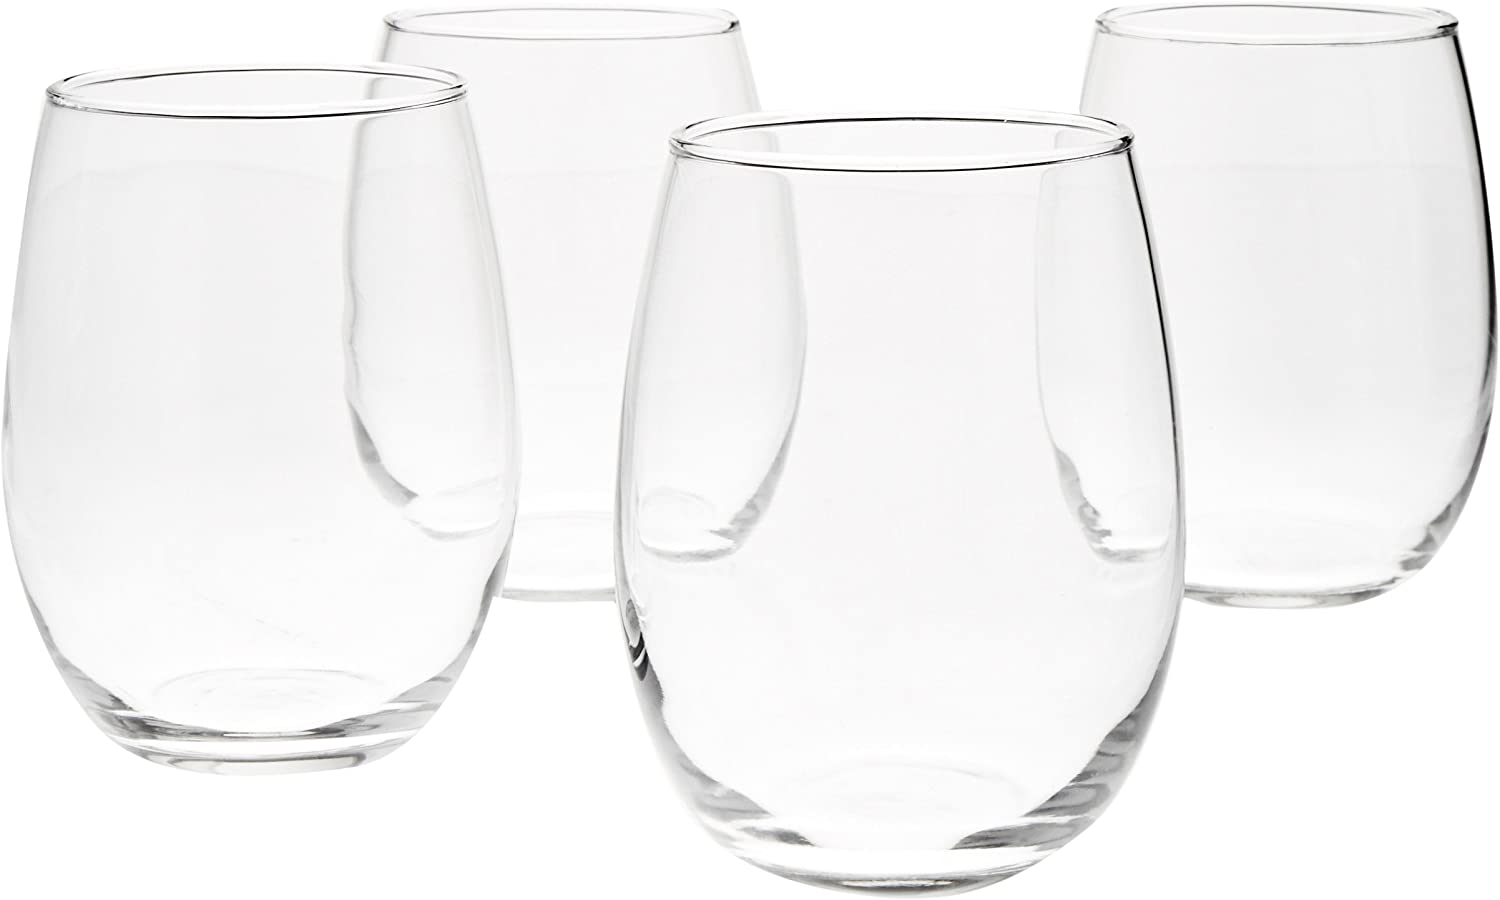 Amazon Basics Lead-Free Entertaining Wine Glasses, Set Of 4